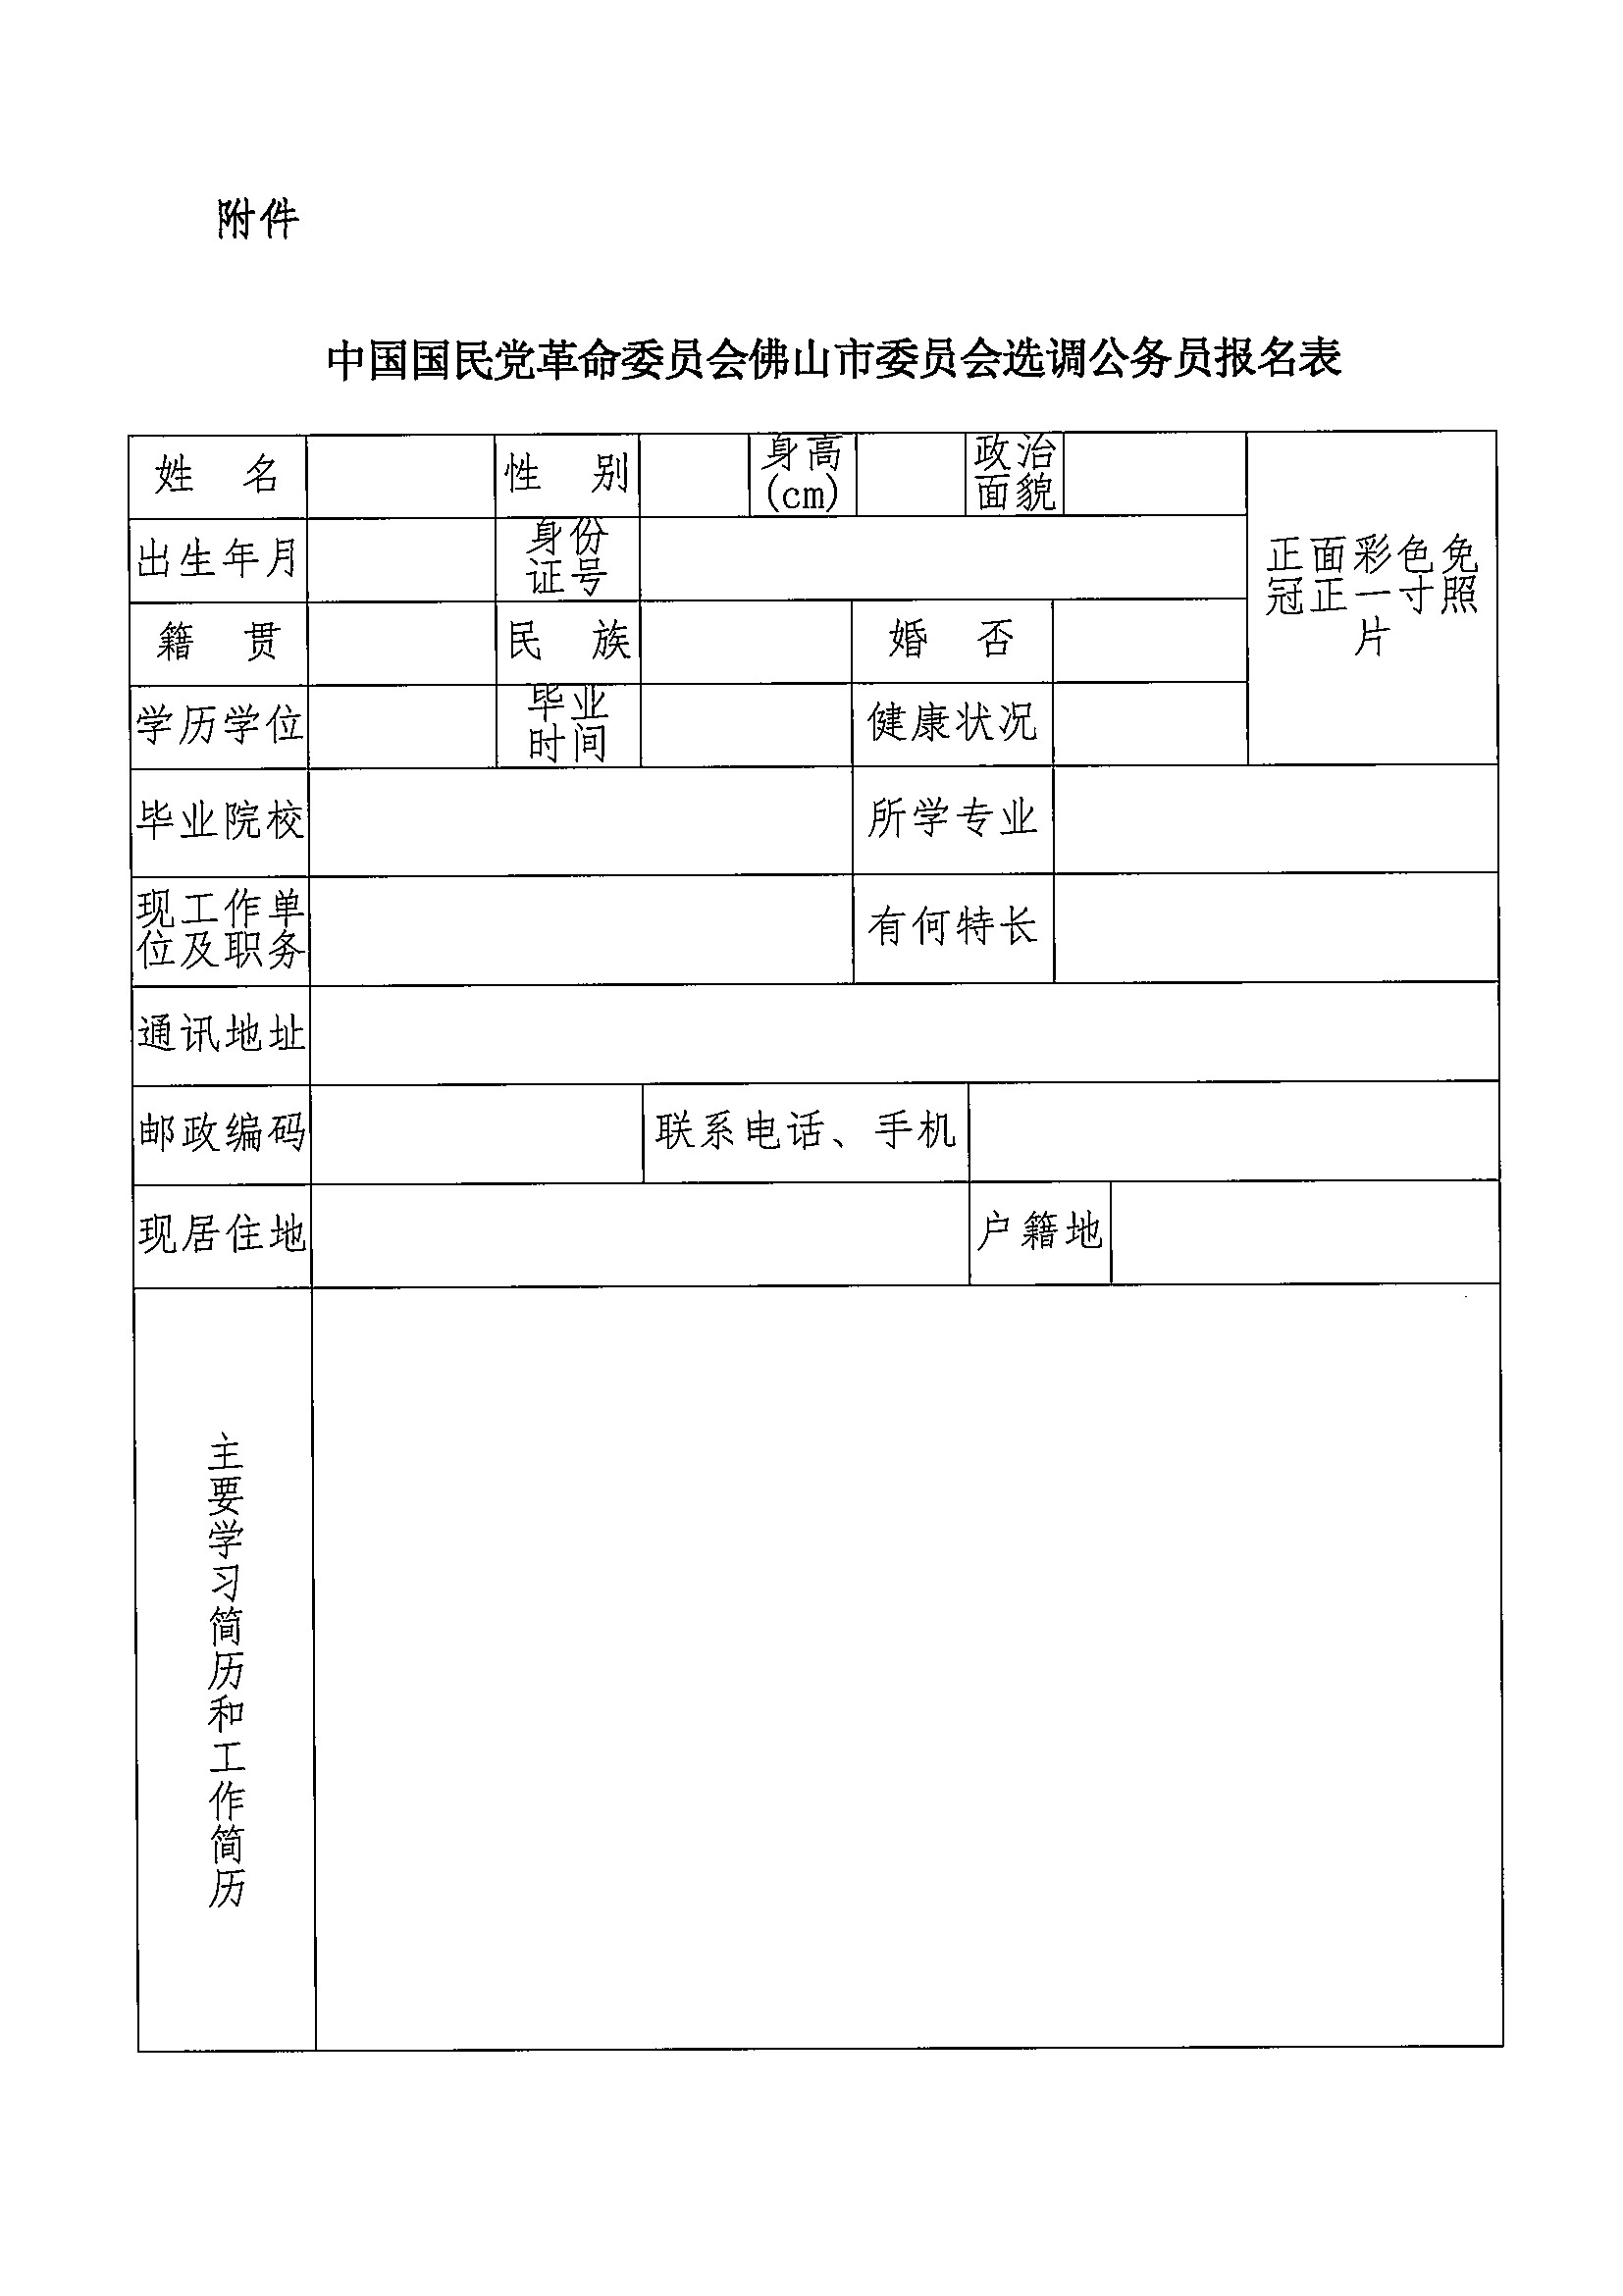 中国国民党革命委员会佛山市委员会选调公务员报名表1.jpg